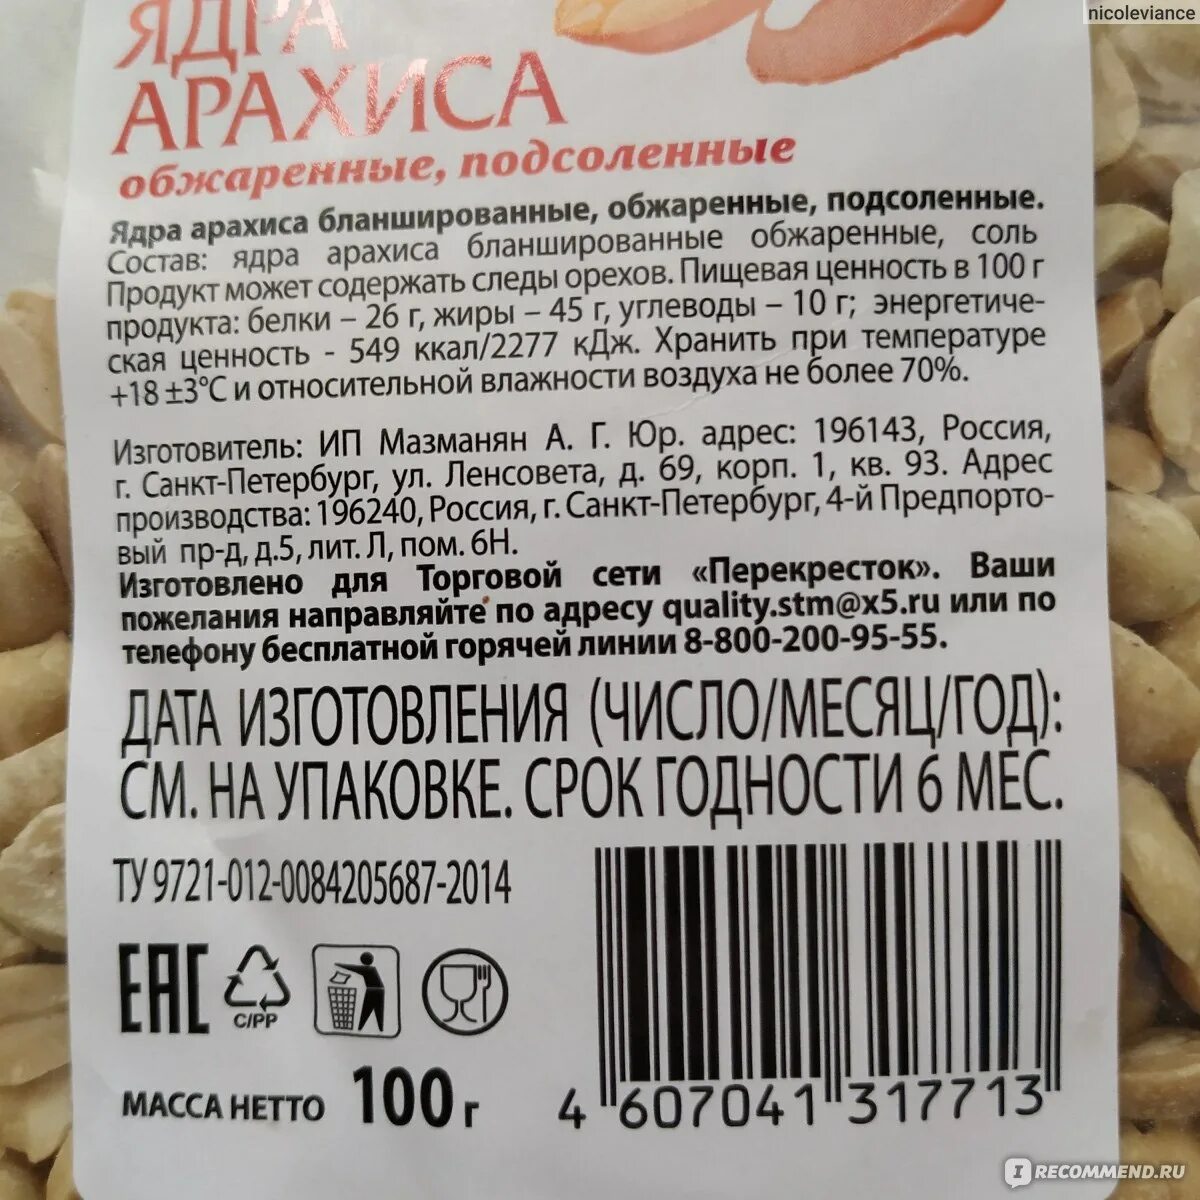 Сколько калорий в арахисовой. Арахис жареный калорийность на 100 грамм. Арахис соленый калорийность. Соленые орешки калорийность. Арахис жареный соленый калорийность.